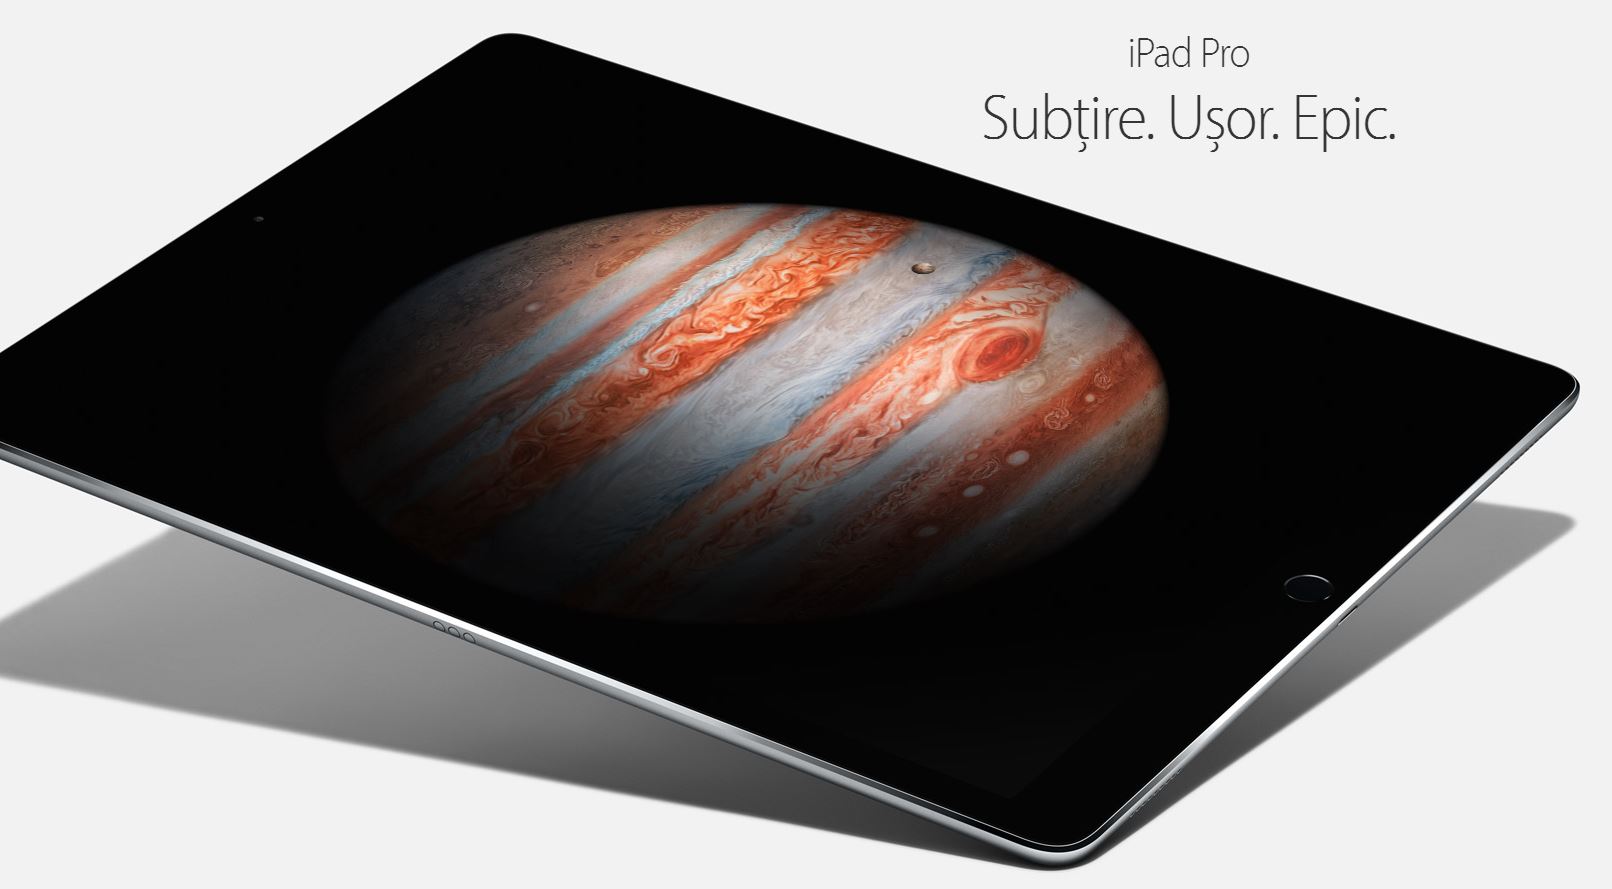 Buono schermo dell'iPad Pro da 9.7 pollici